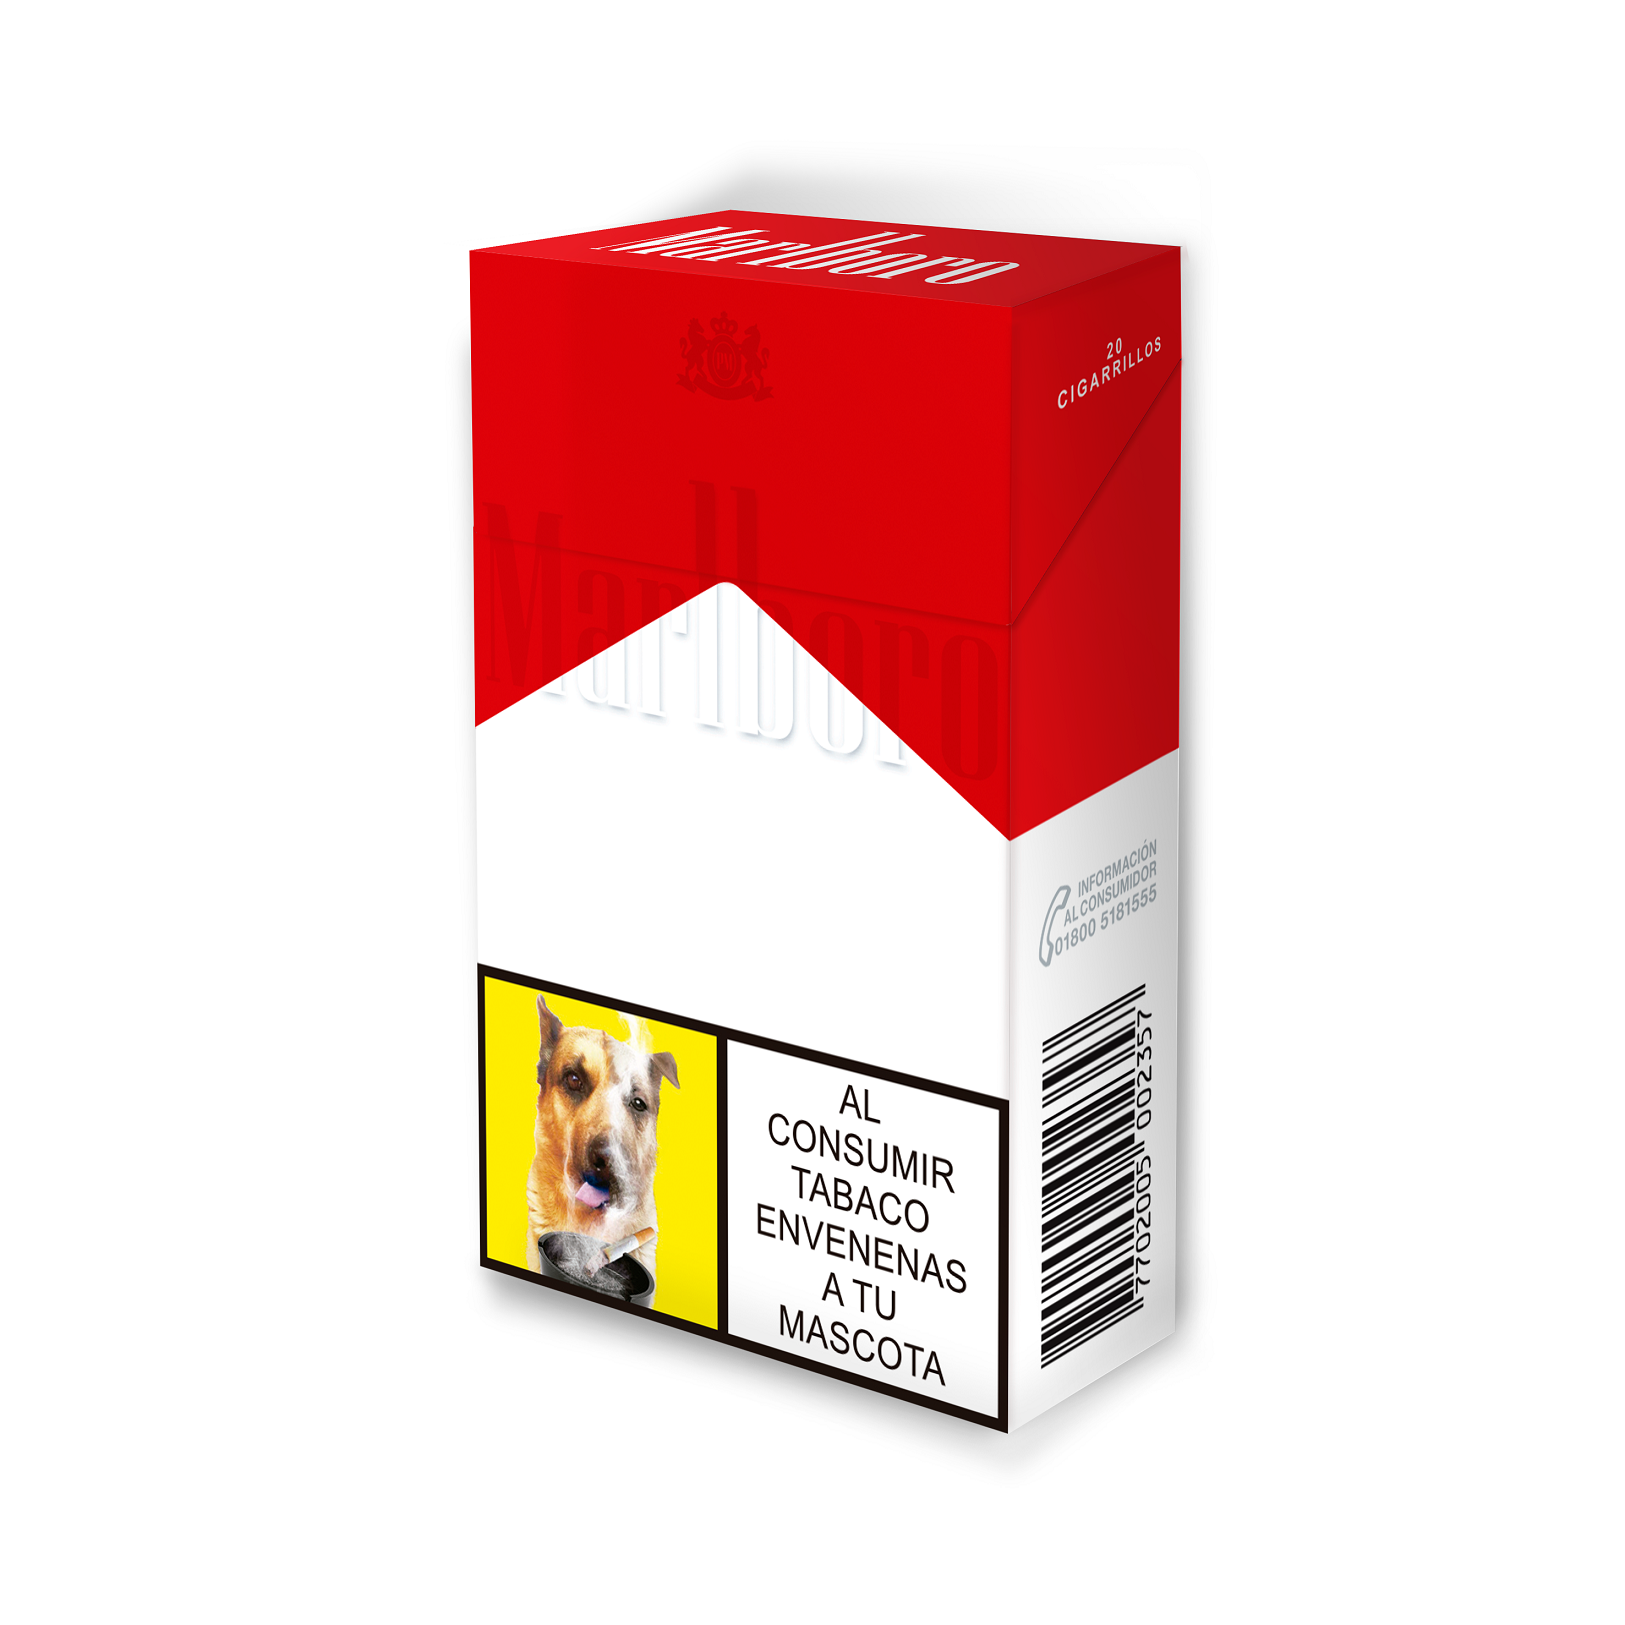 Cigarrillo Marlboro Rojo 2.0 Dorado x20cig Nueva Presentación